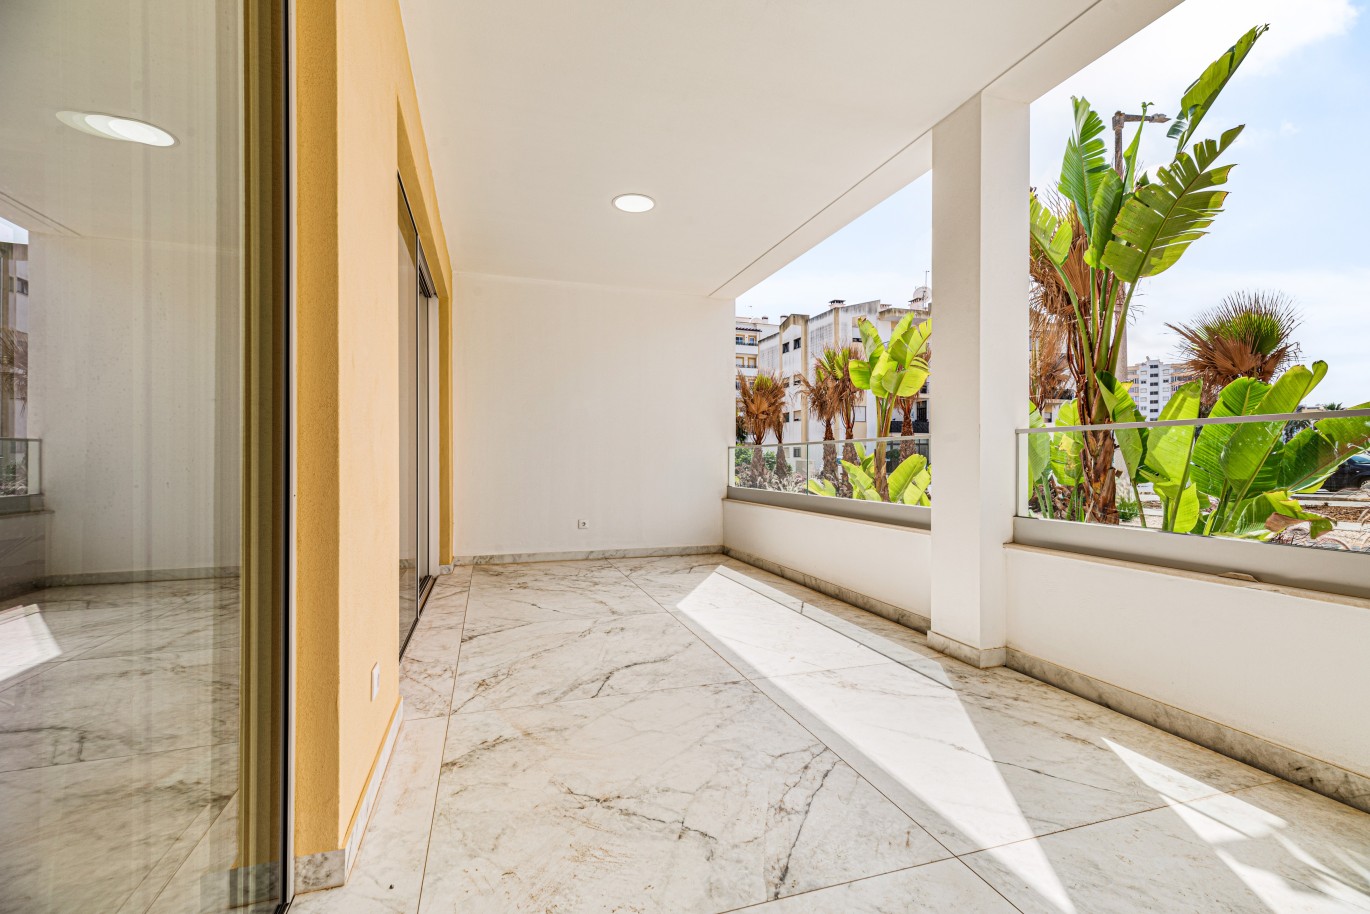 Apartamento, com terraço, para venda, em Lagos, Algarve_238101